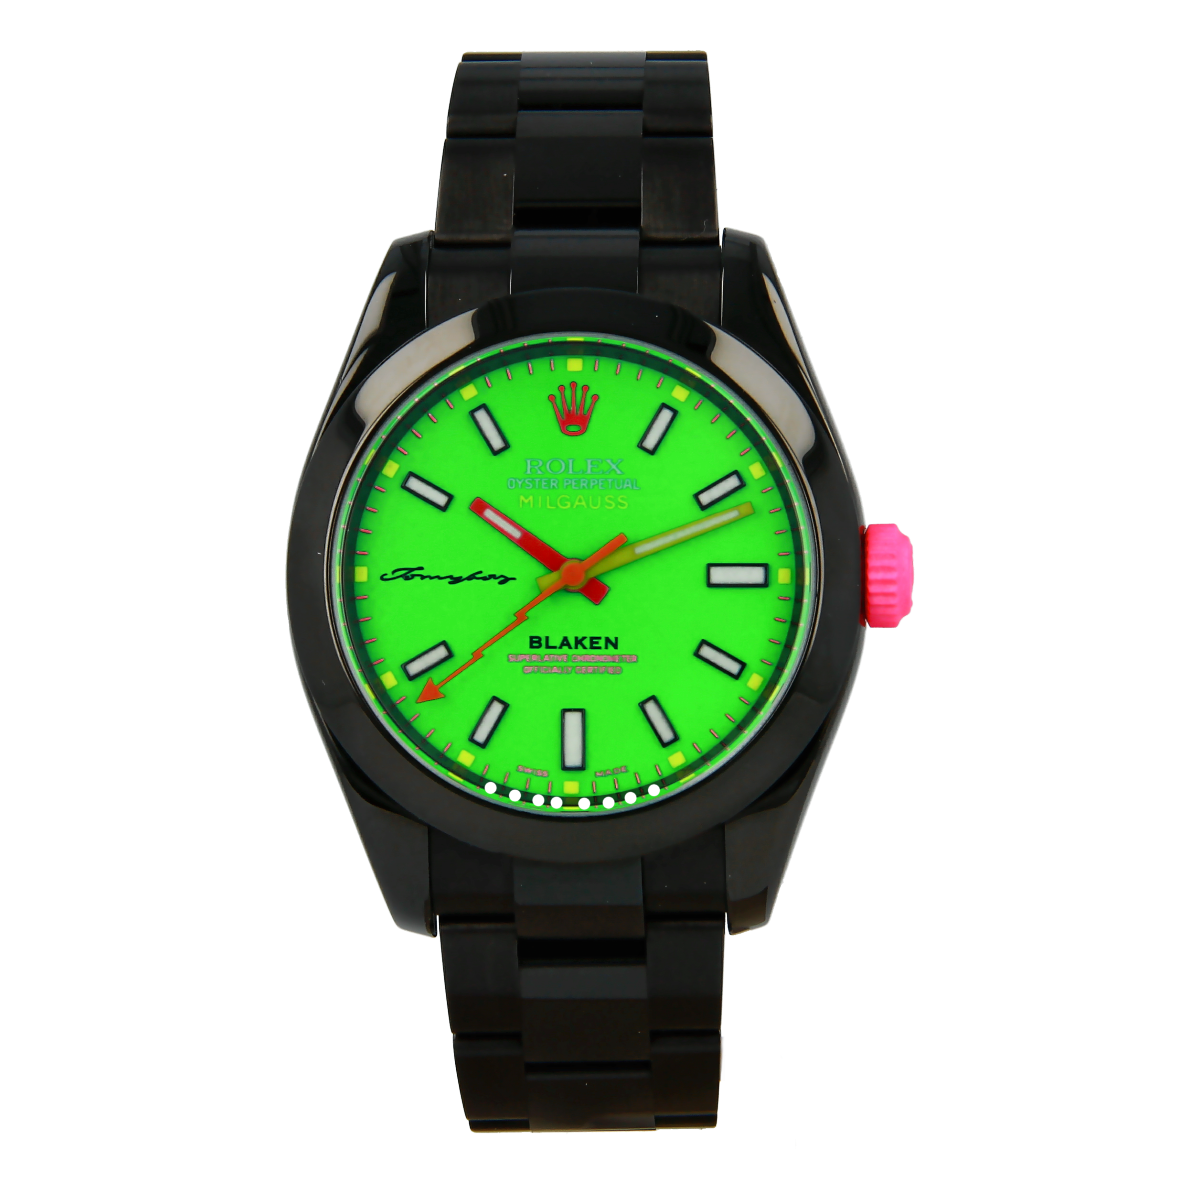 Rolex Milgauss Black Rocketbyz Edición Limitada de Blaken | Comprar reloj Rolex de segunda mano